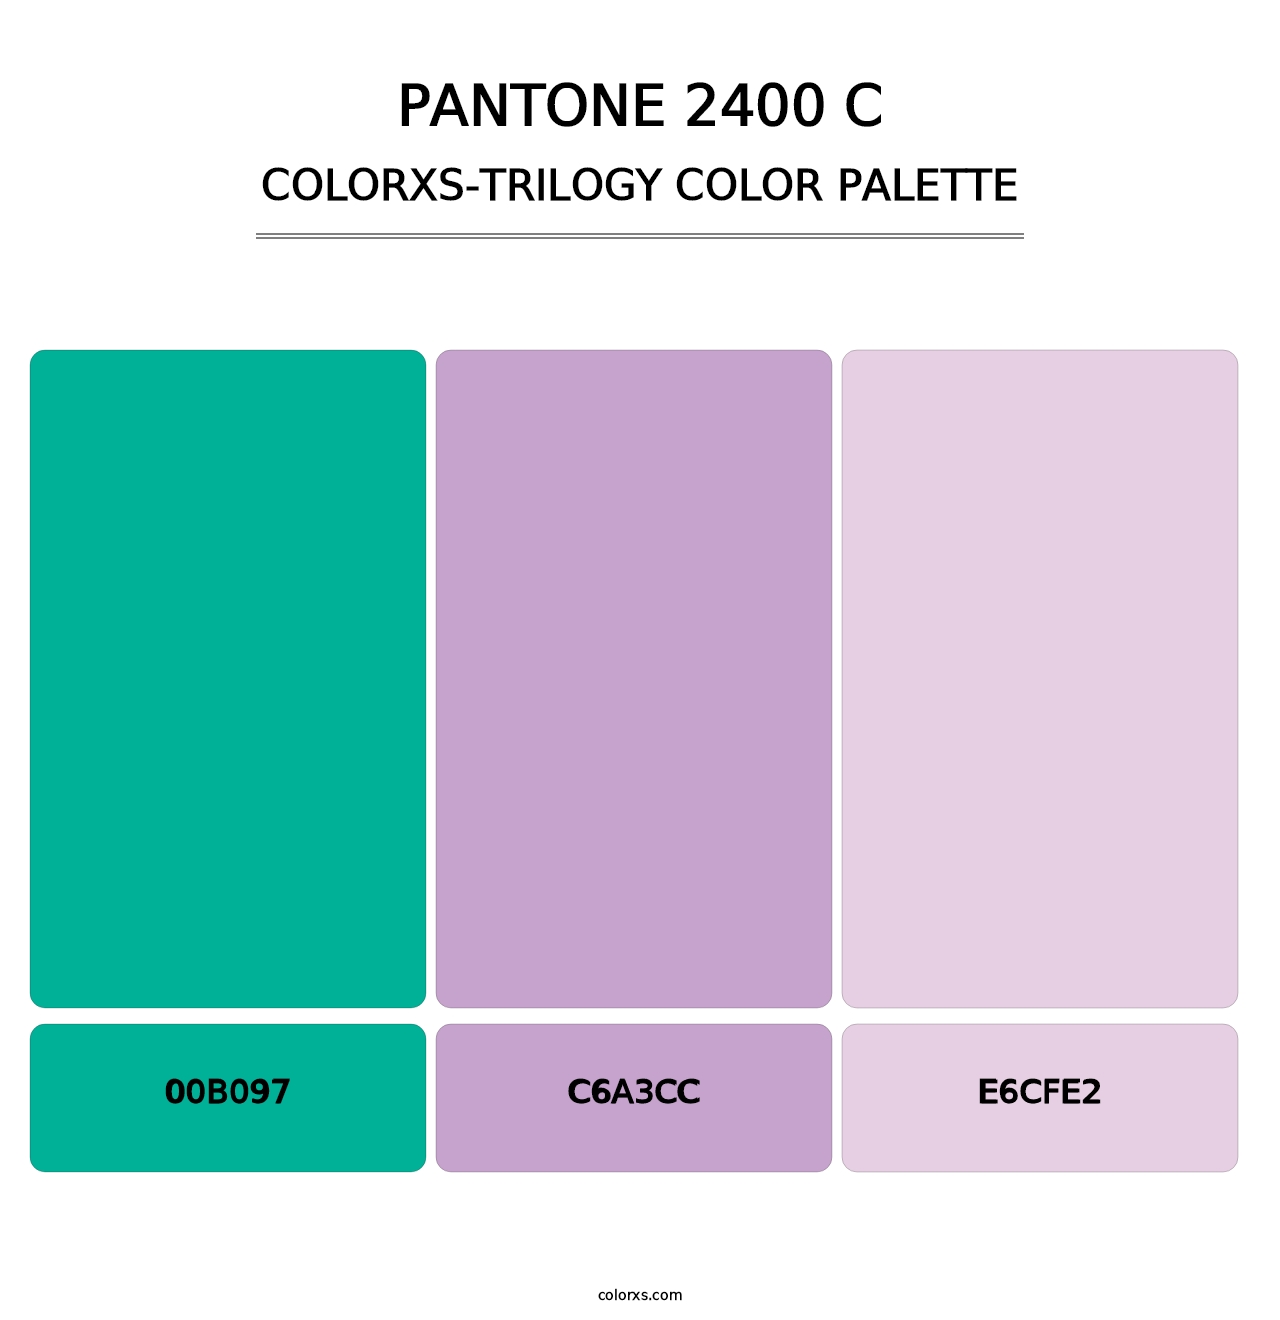 PANTONE 2400 C - Colorxs Trilogy Palette